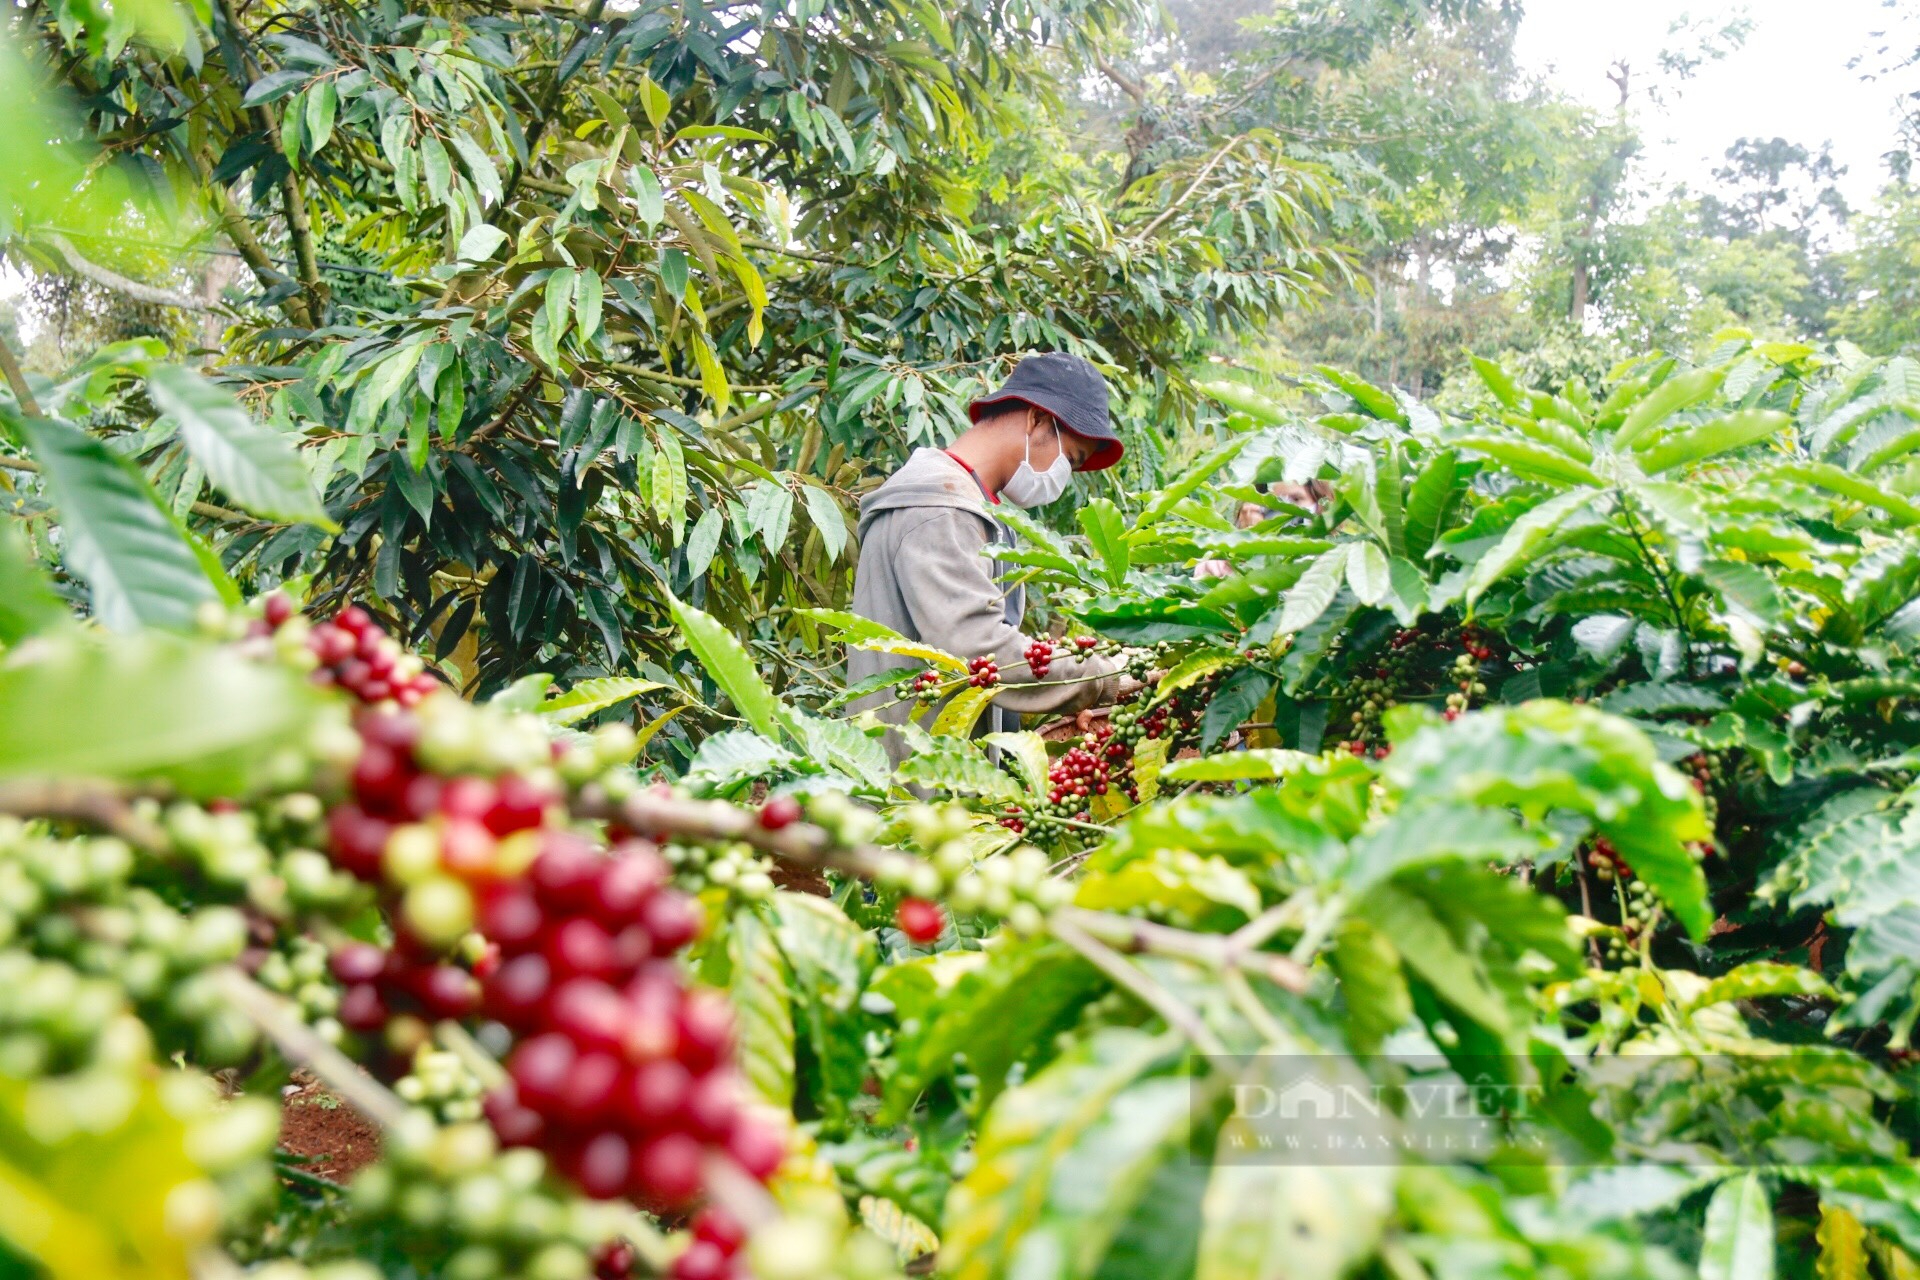 Giá cà phê hôm nay: Vì sao giá cà phê tăng cao nhưng nông dân vẫn kêu lỗ? - Ảnh 3.